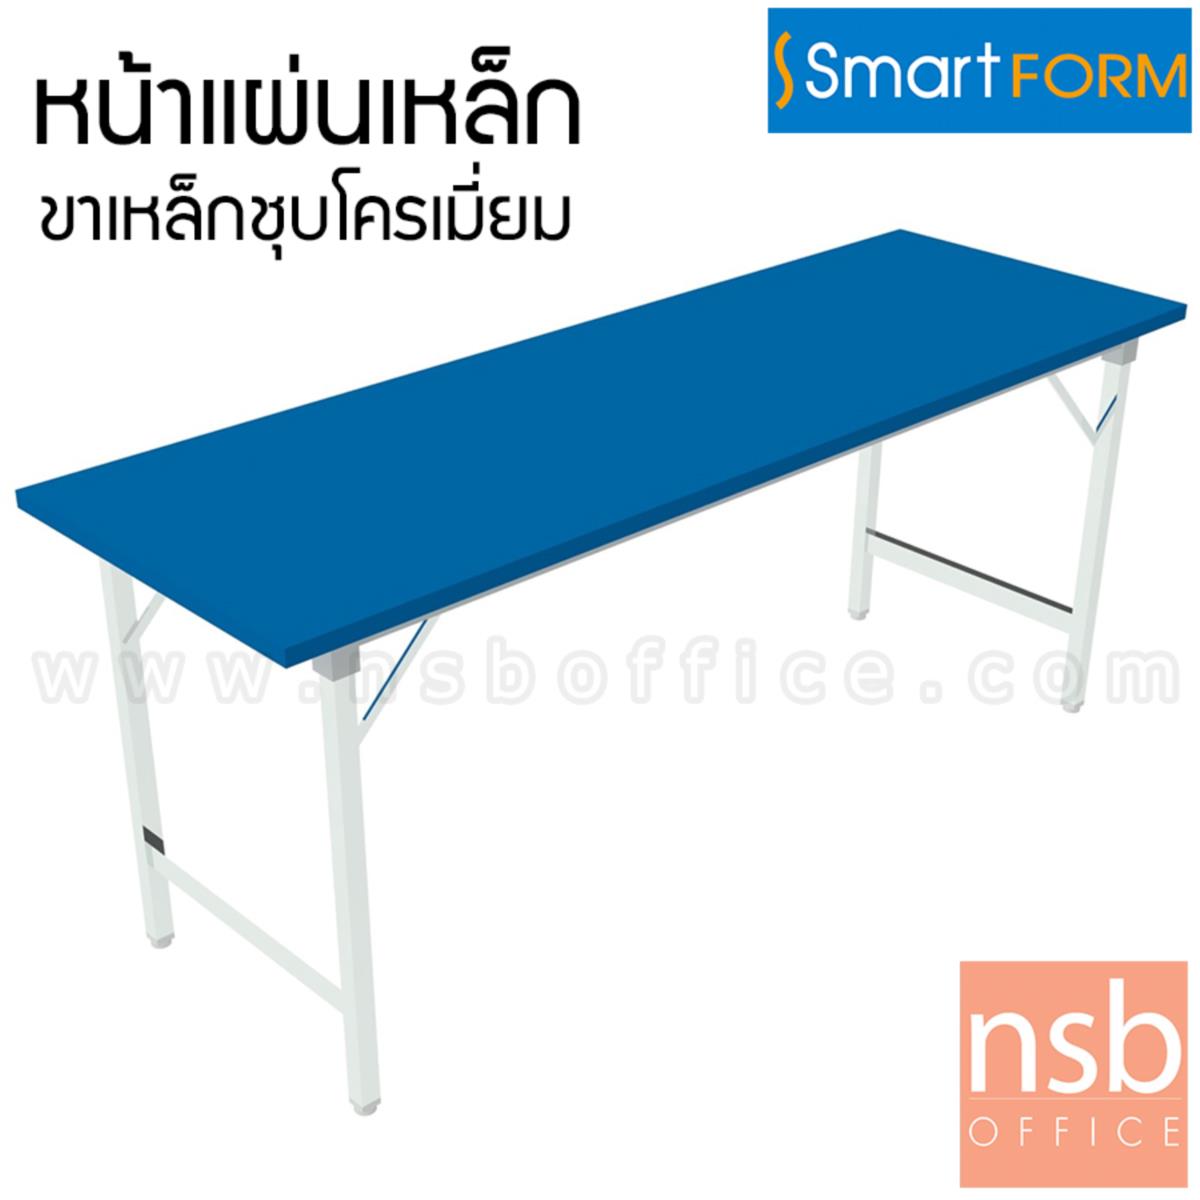 A07A083:โต๊ะพับหน้าเหล็ก  ขนาด 150W, 180W (*75D) cm  ขาเหล็กชุบโครเมี่ยม